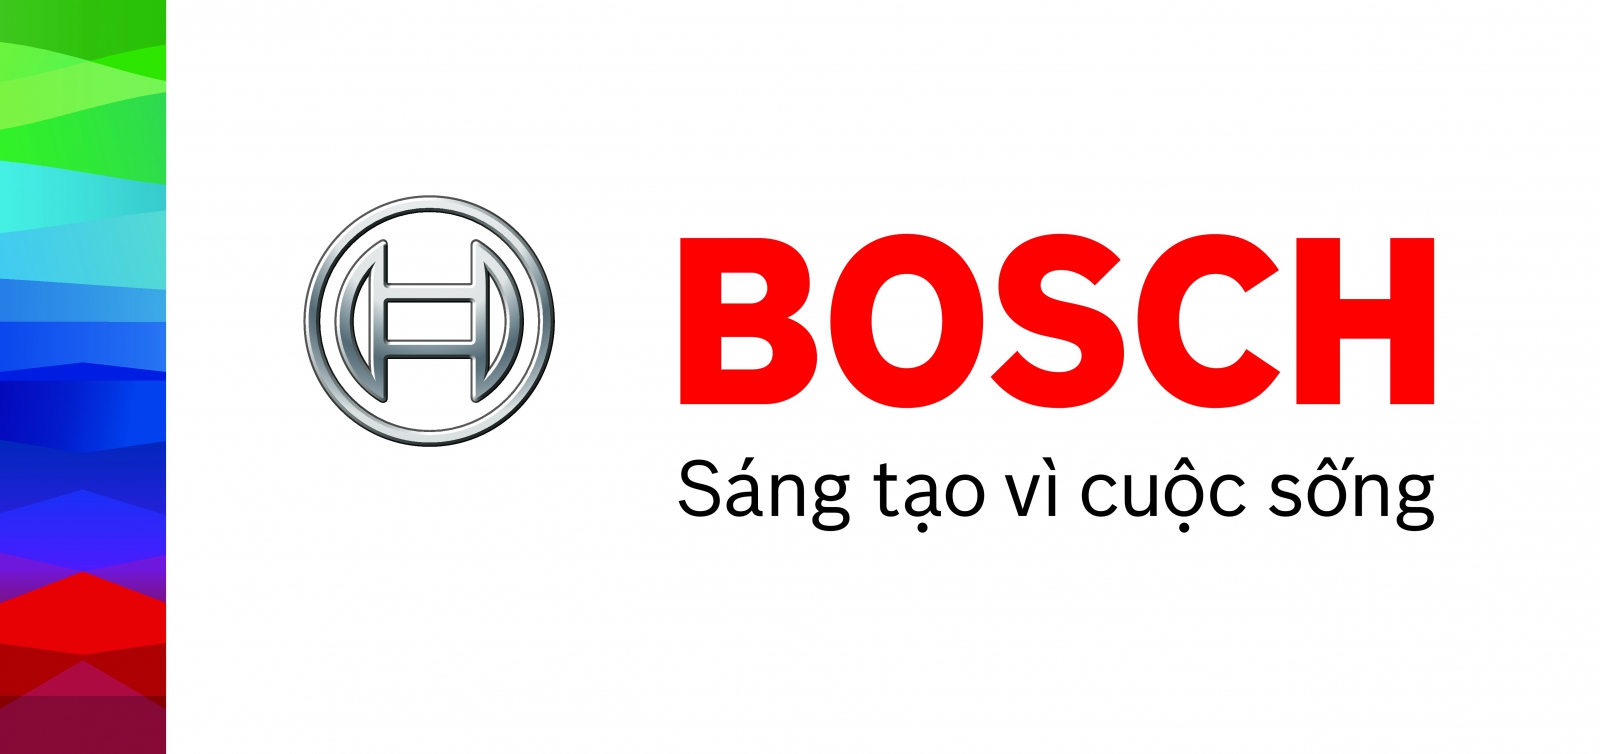 Ưu điểm của thiết bị nhà bếp Bosch